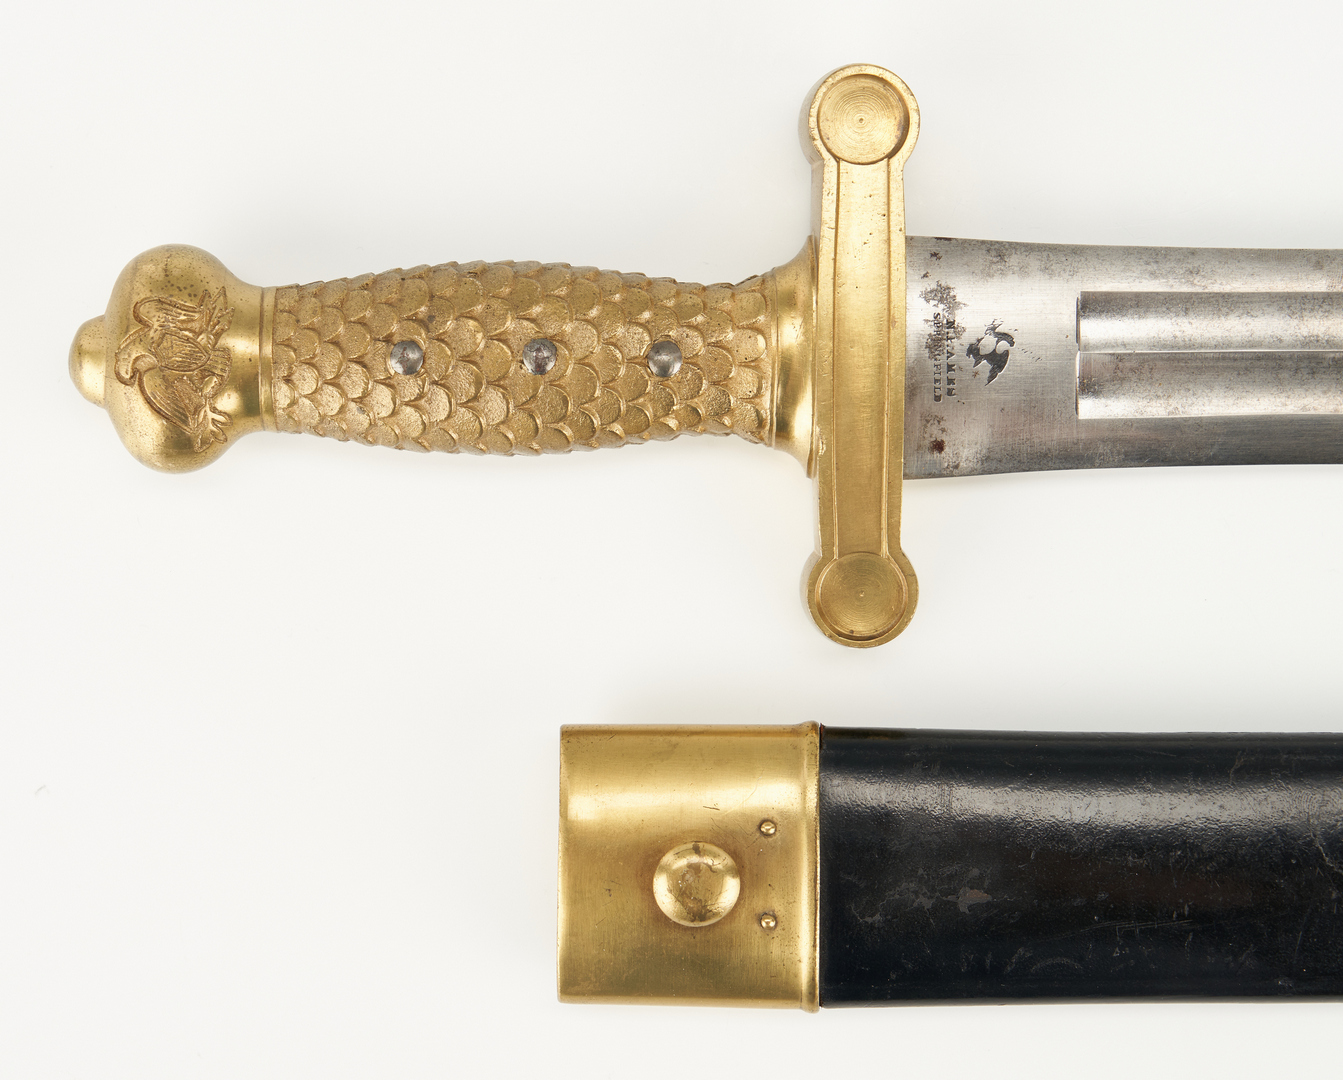 Lot 713: U.S. Springfield Artillery Model 1832 Short Sword & Scabbard